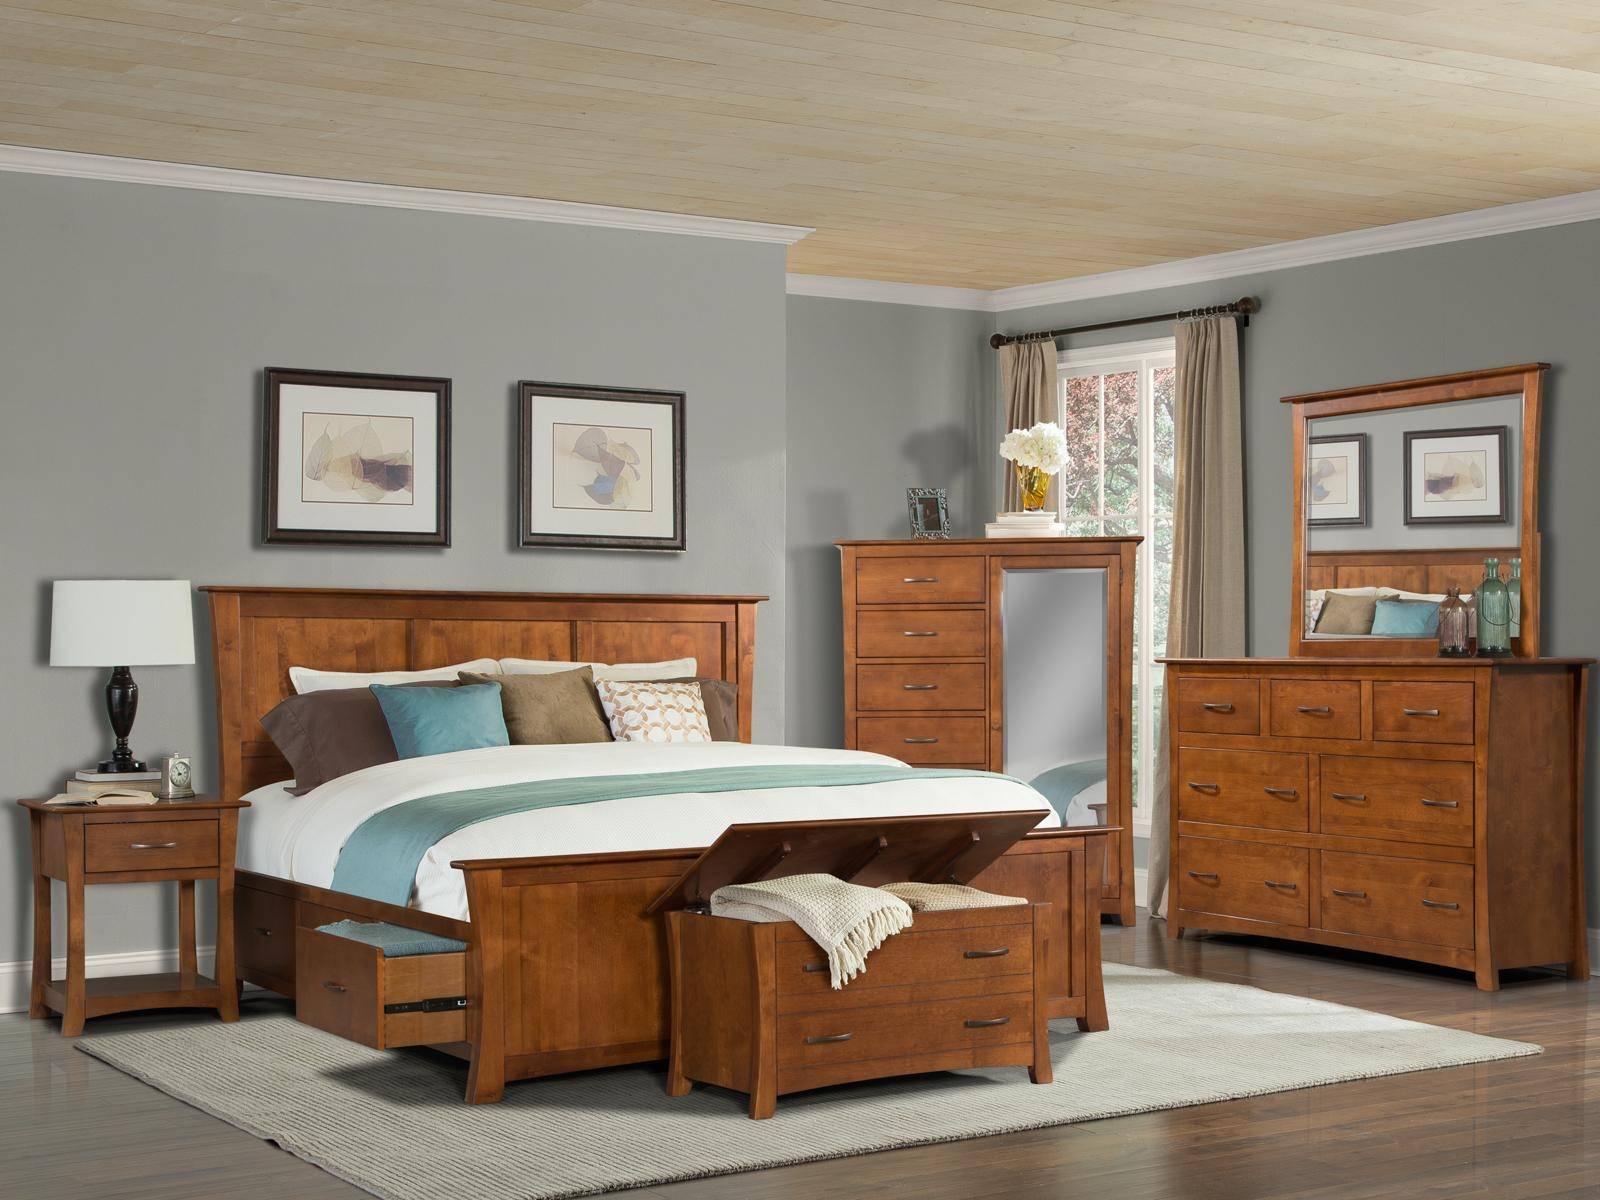 Buy A America Grant Park Queen Storage Bedroom Set 5 Pcs In Pecan Wood Online